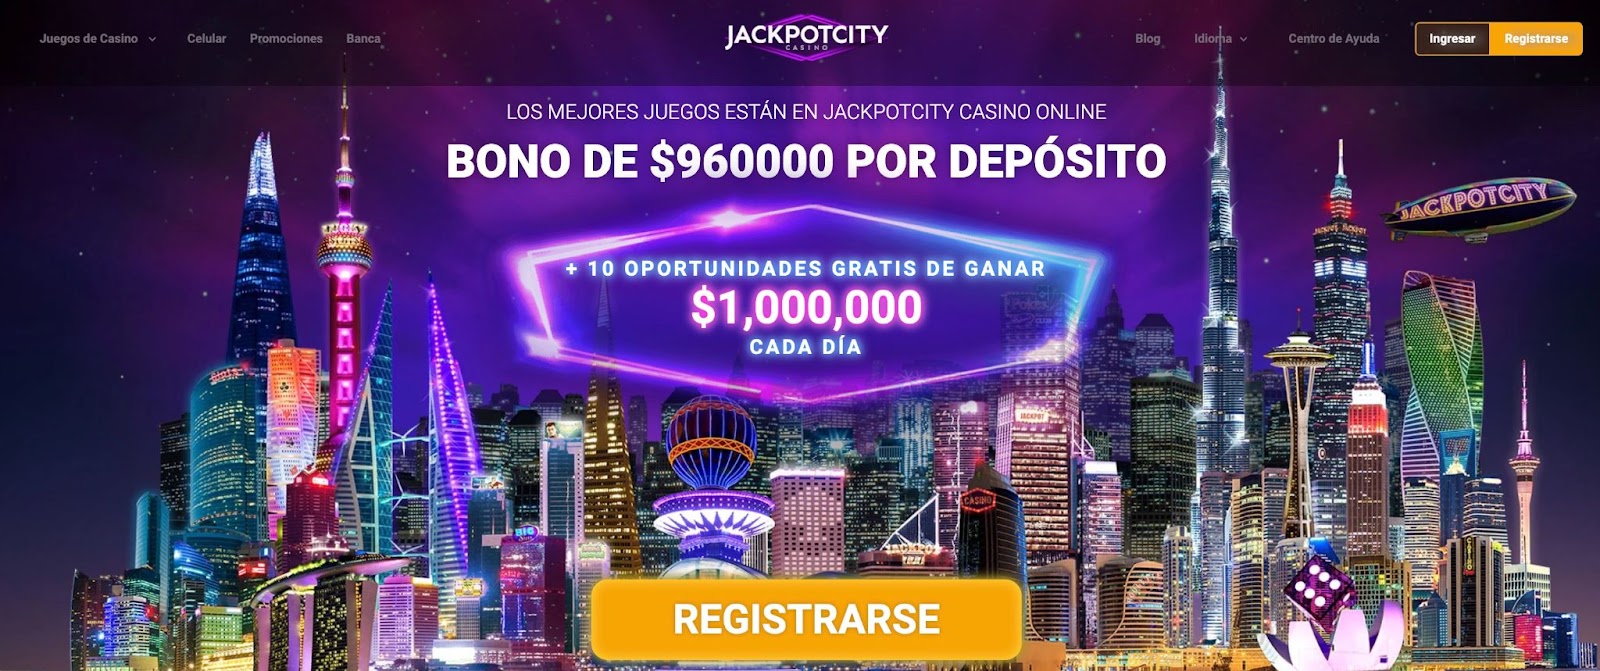 (c) Jackpotcity-chile.com